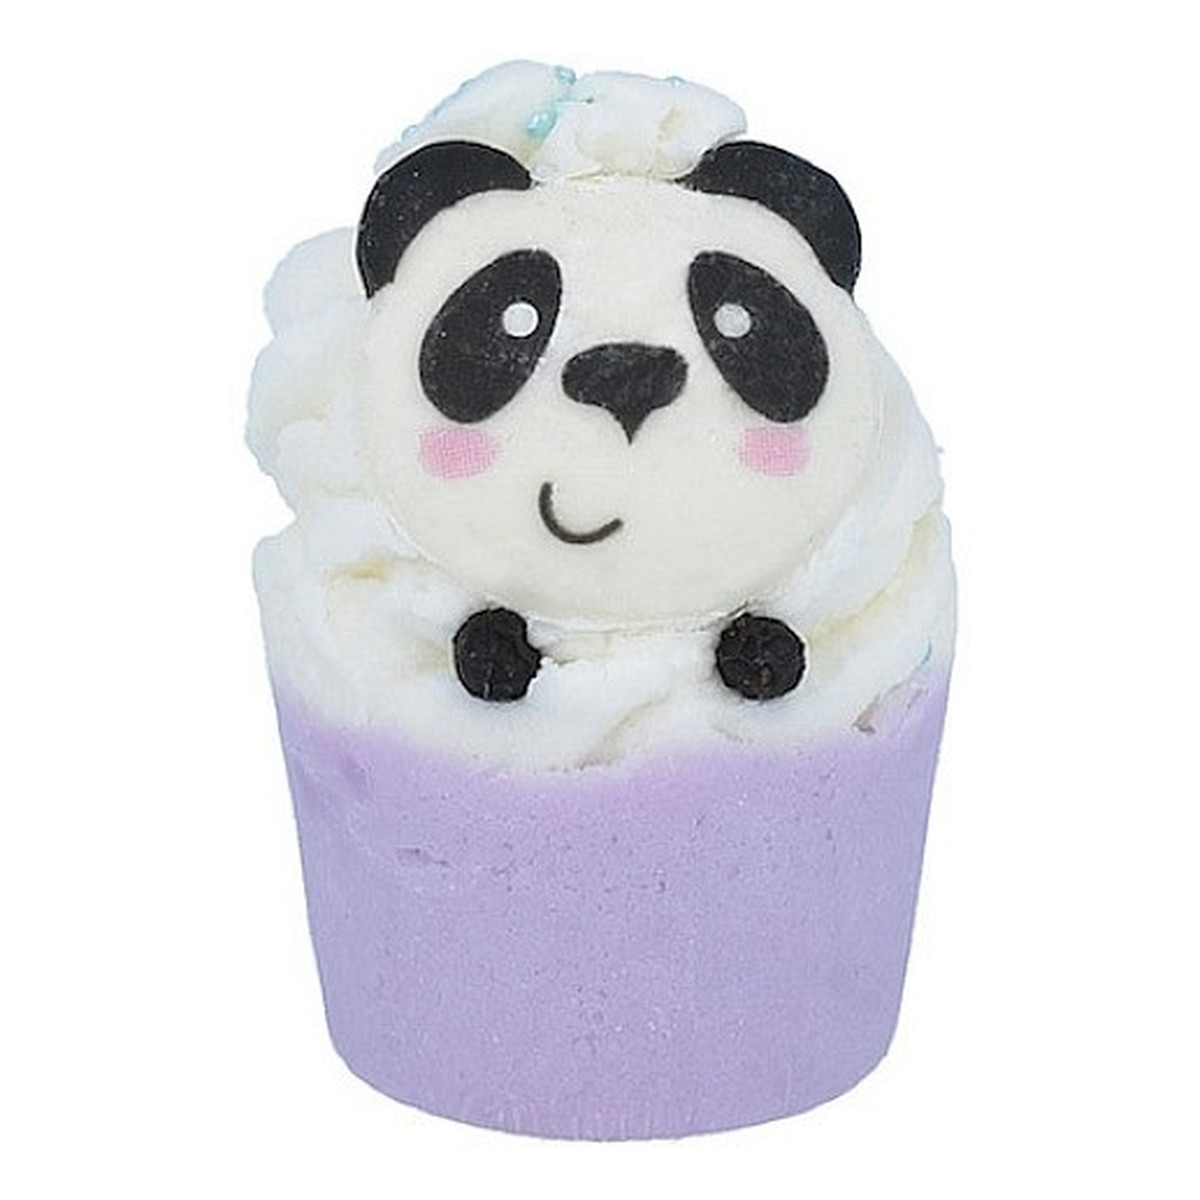 Bomb Cosmetics Panda-Monium Nawilżająca babeczka do kąpieli 50g